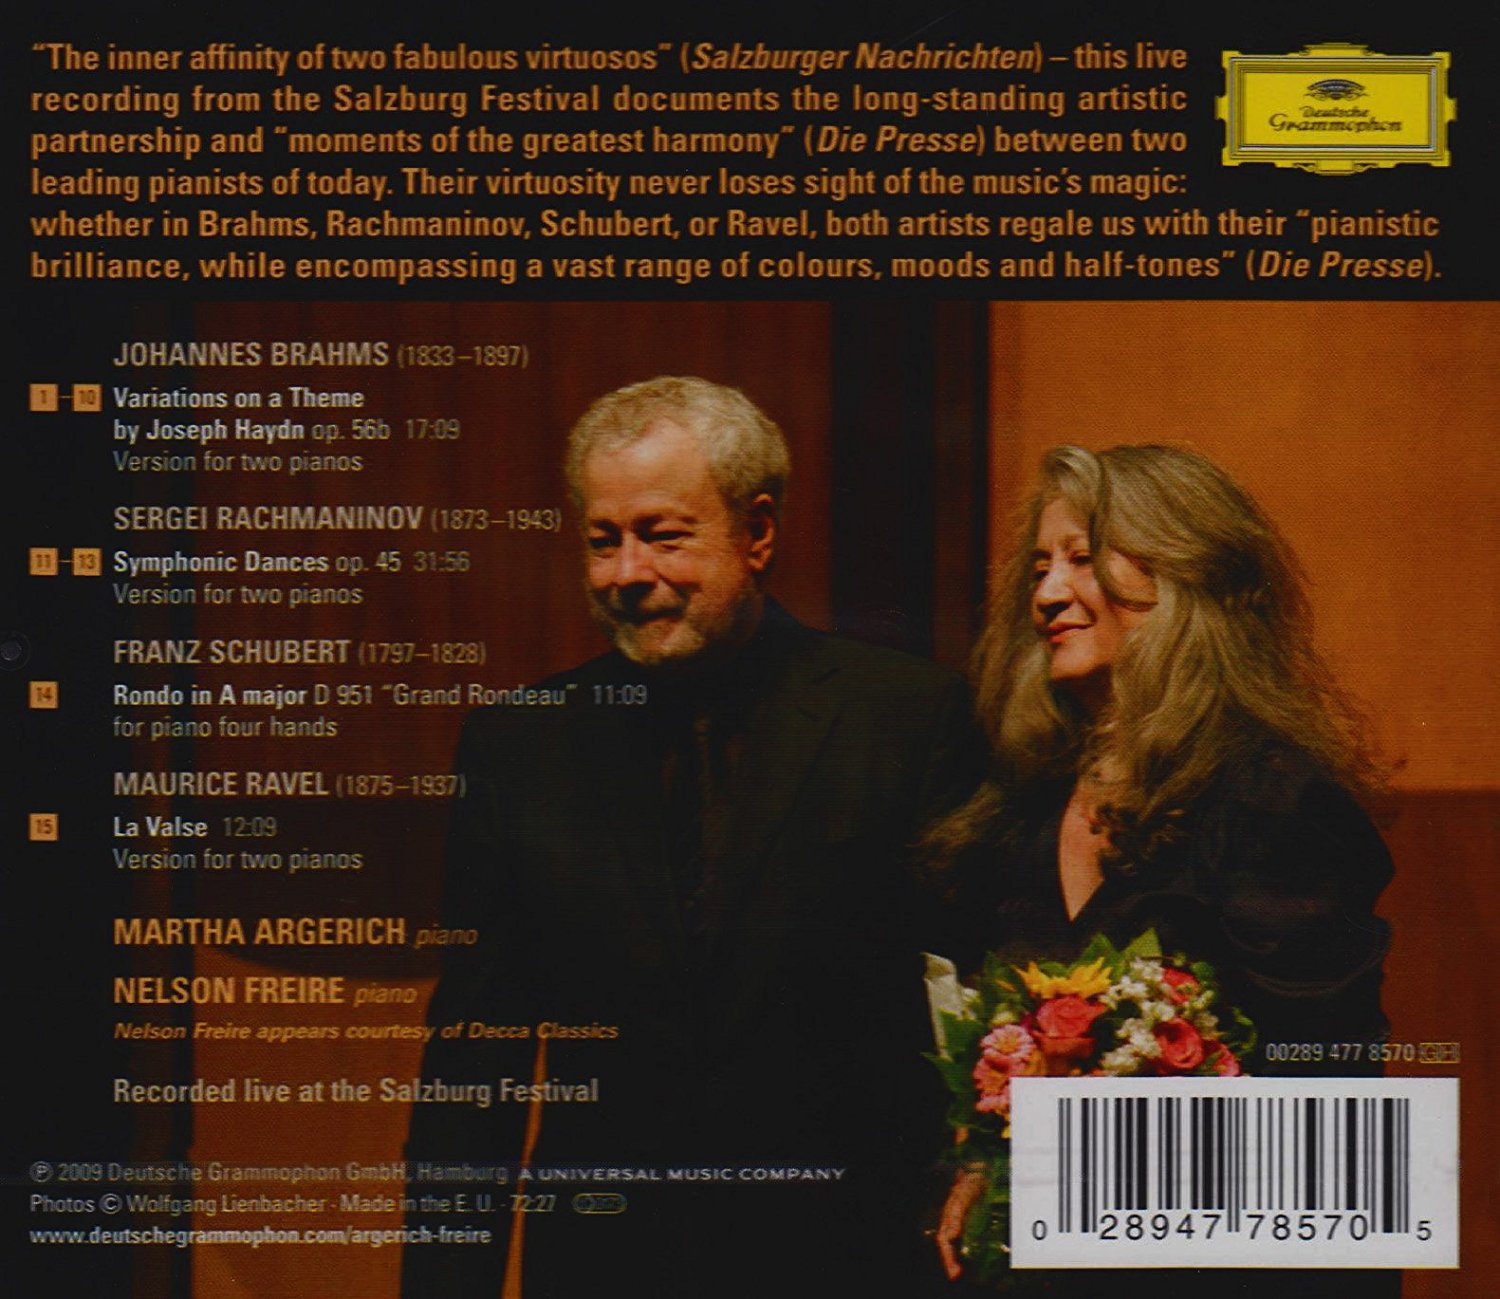 Salzburg | Martha Argerich, Nelson Freire, Johannes Brahms